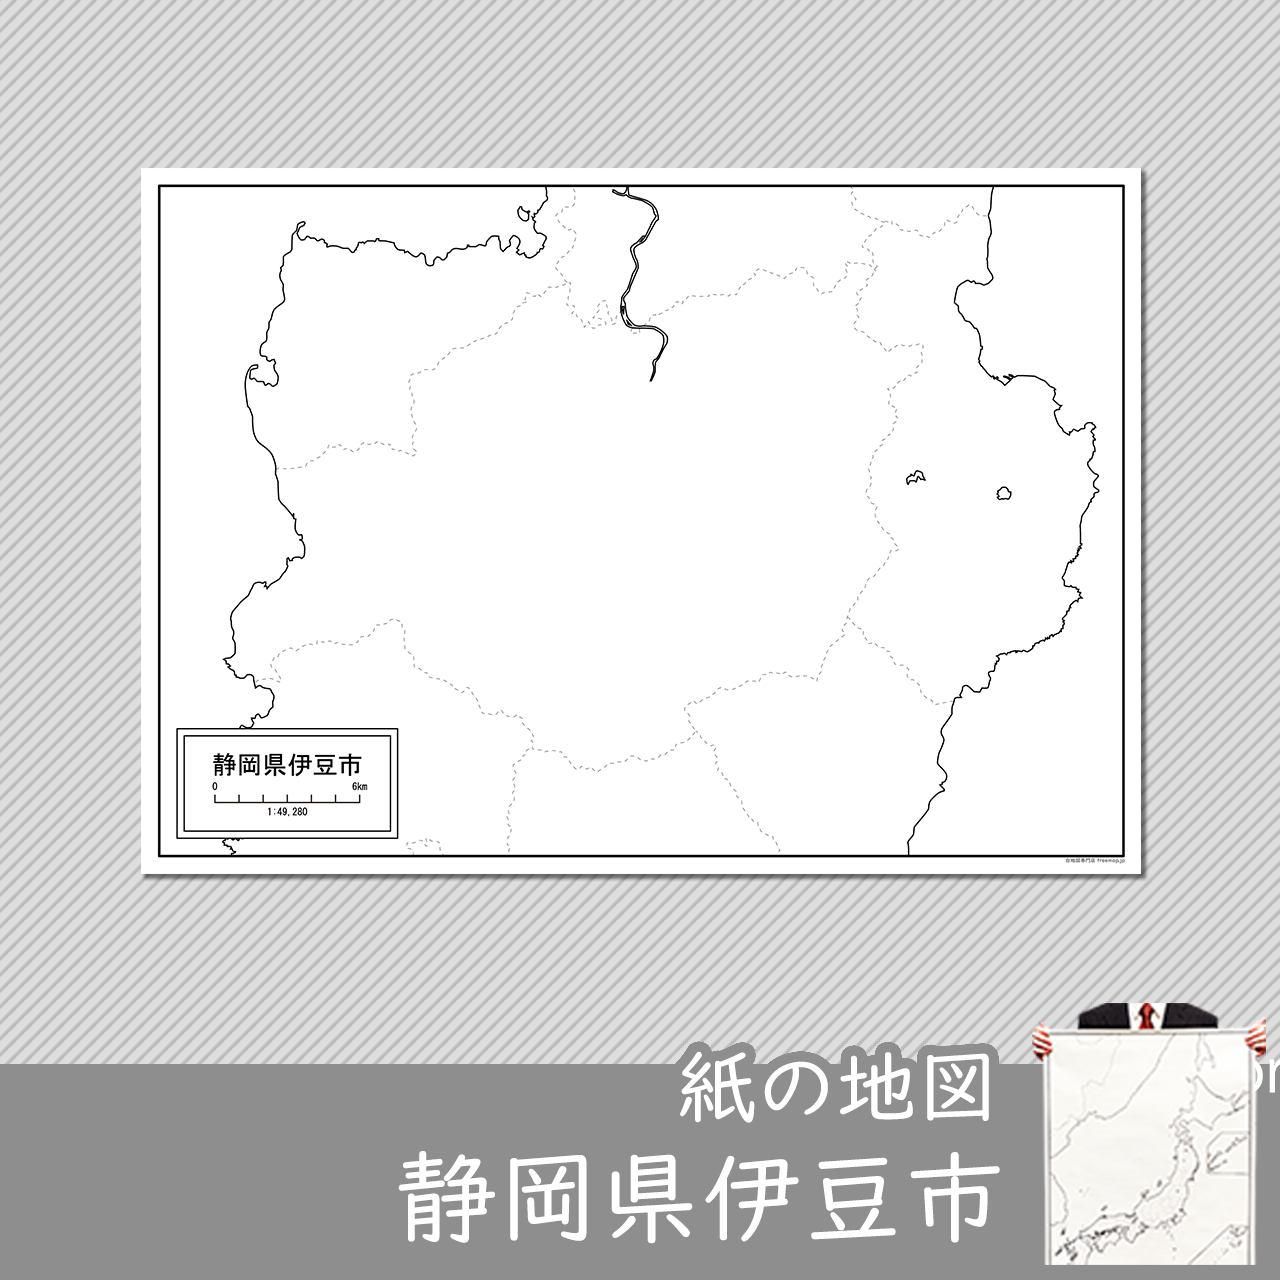 伊豆市の紙の白地図のサムネイル